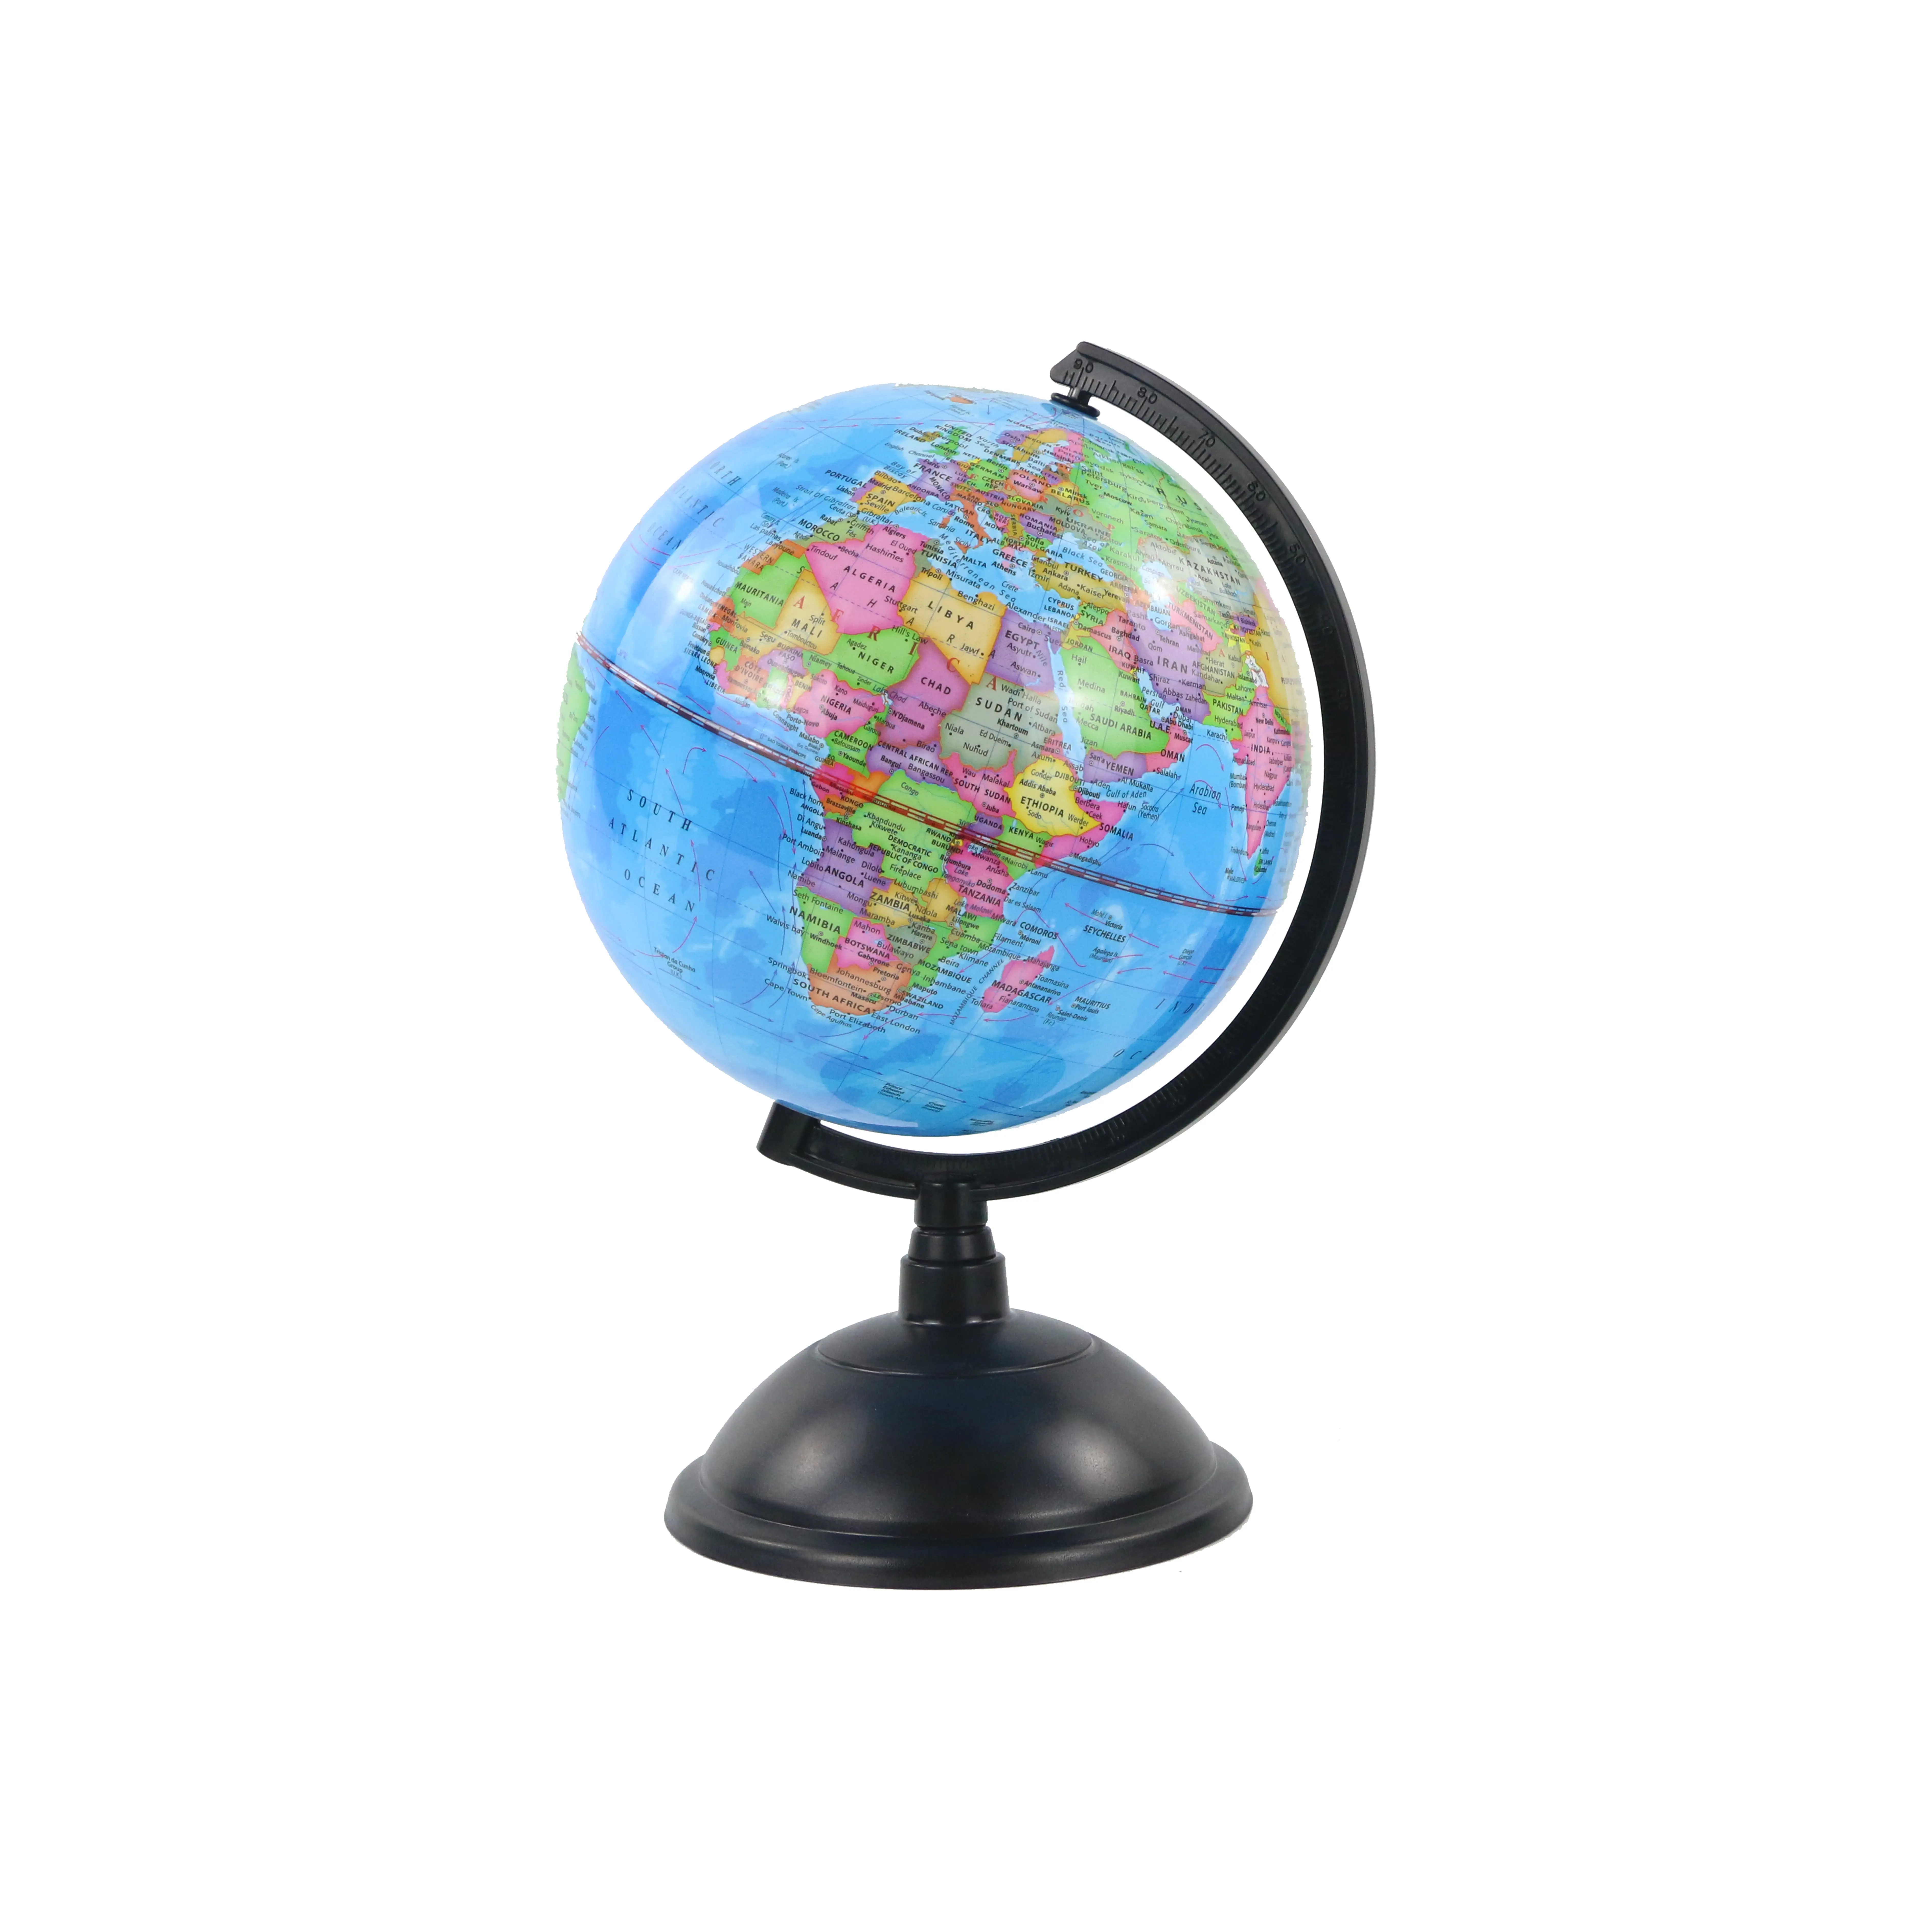 Globo inglese in plastica per ufficio da 20cm arredamento per la casa decorazione della stanza globo della mappa del mondo